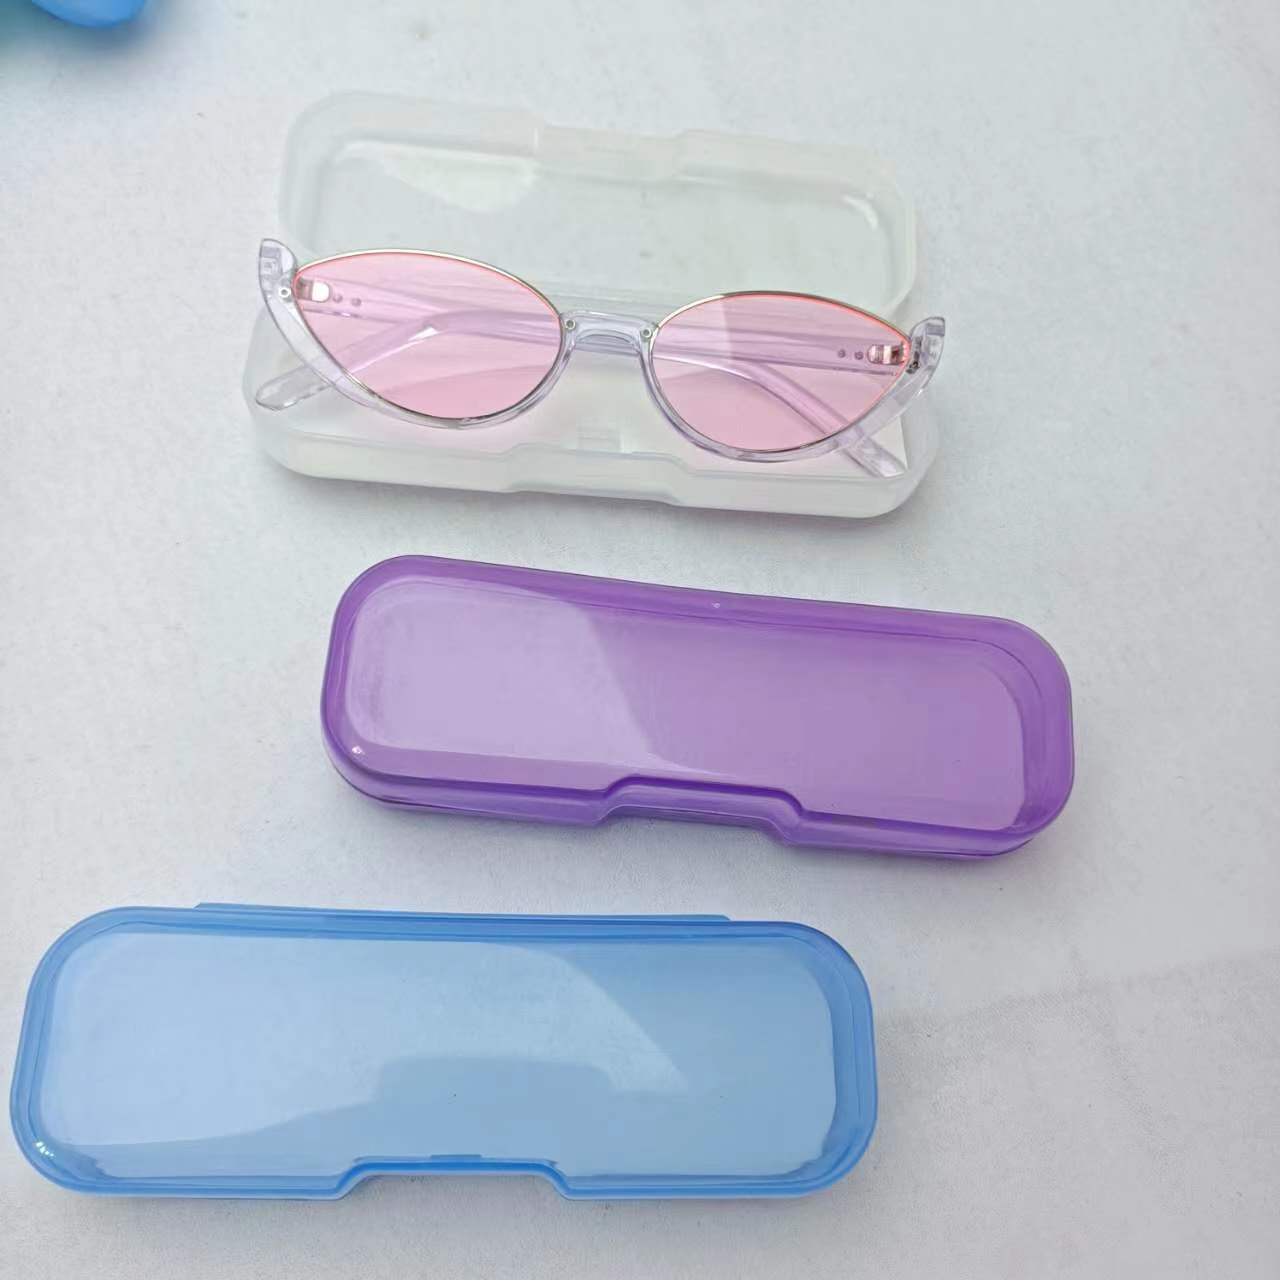 Plastic glasses case